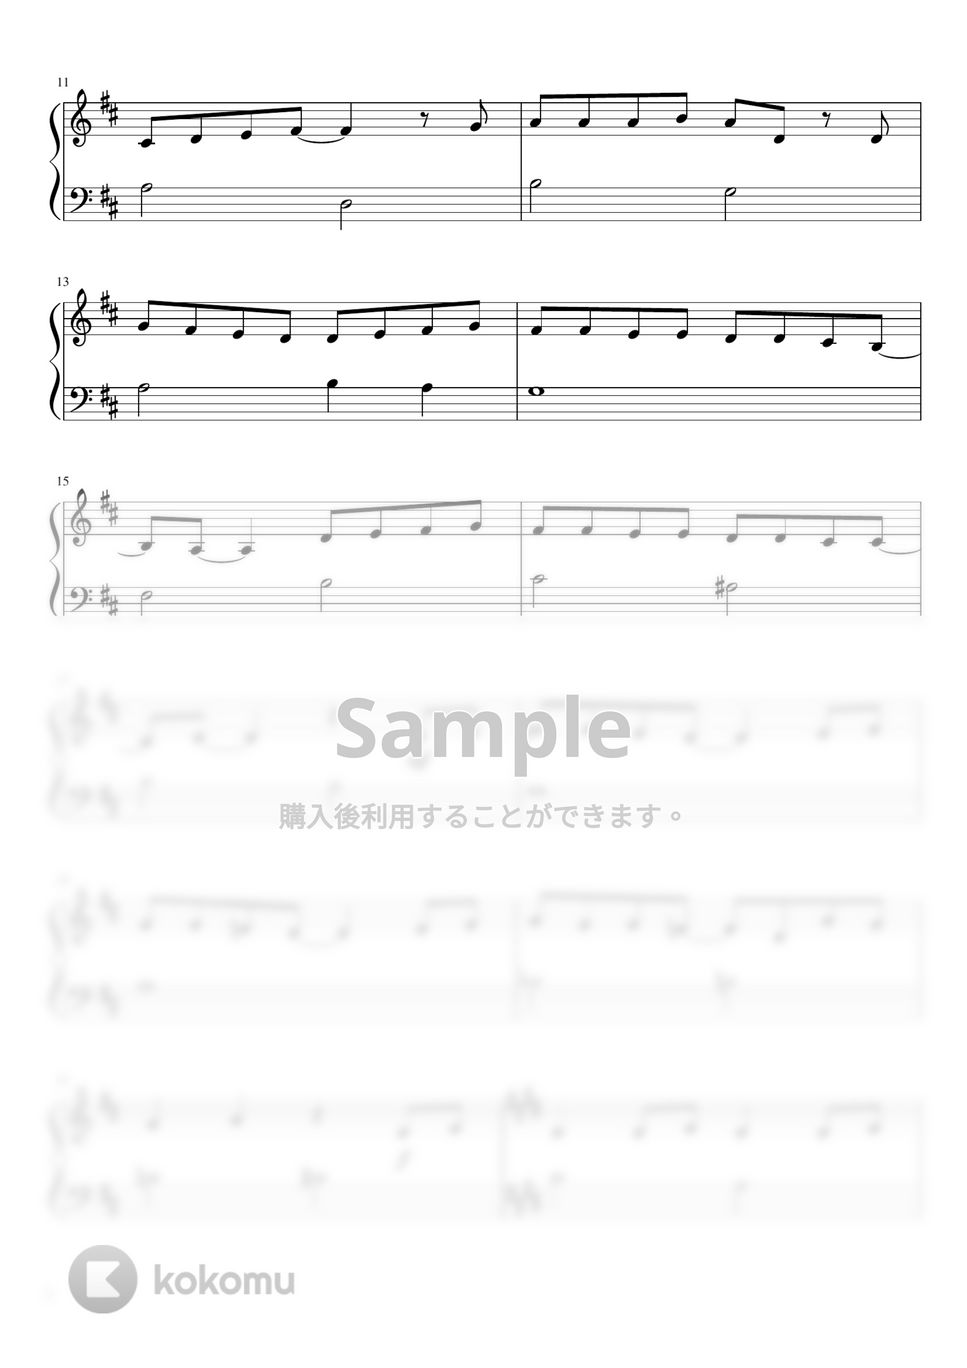 LiSA - 炎 (ピアノ超初級) by pianon